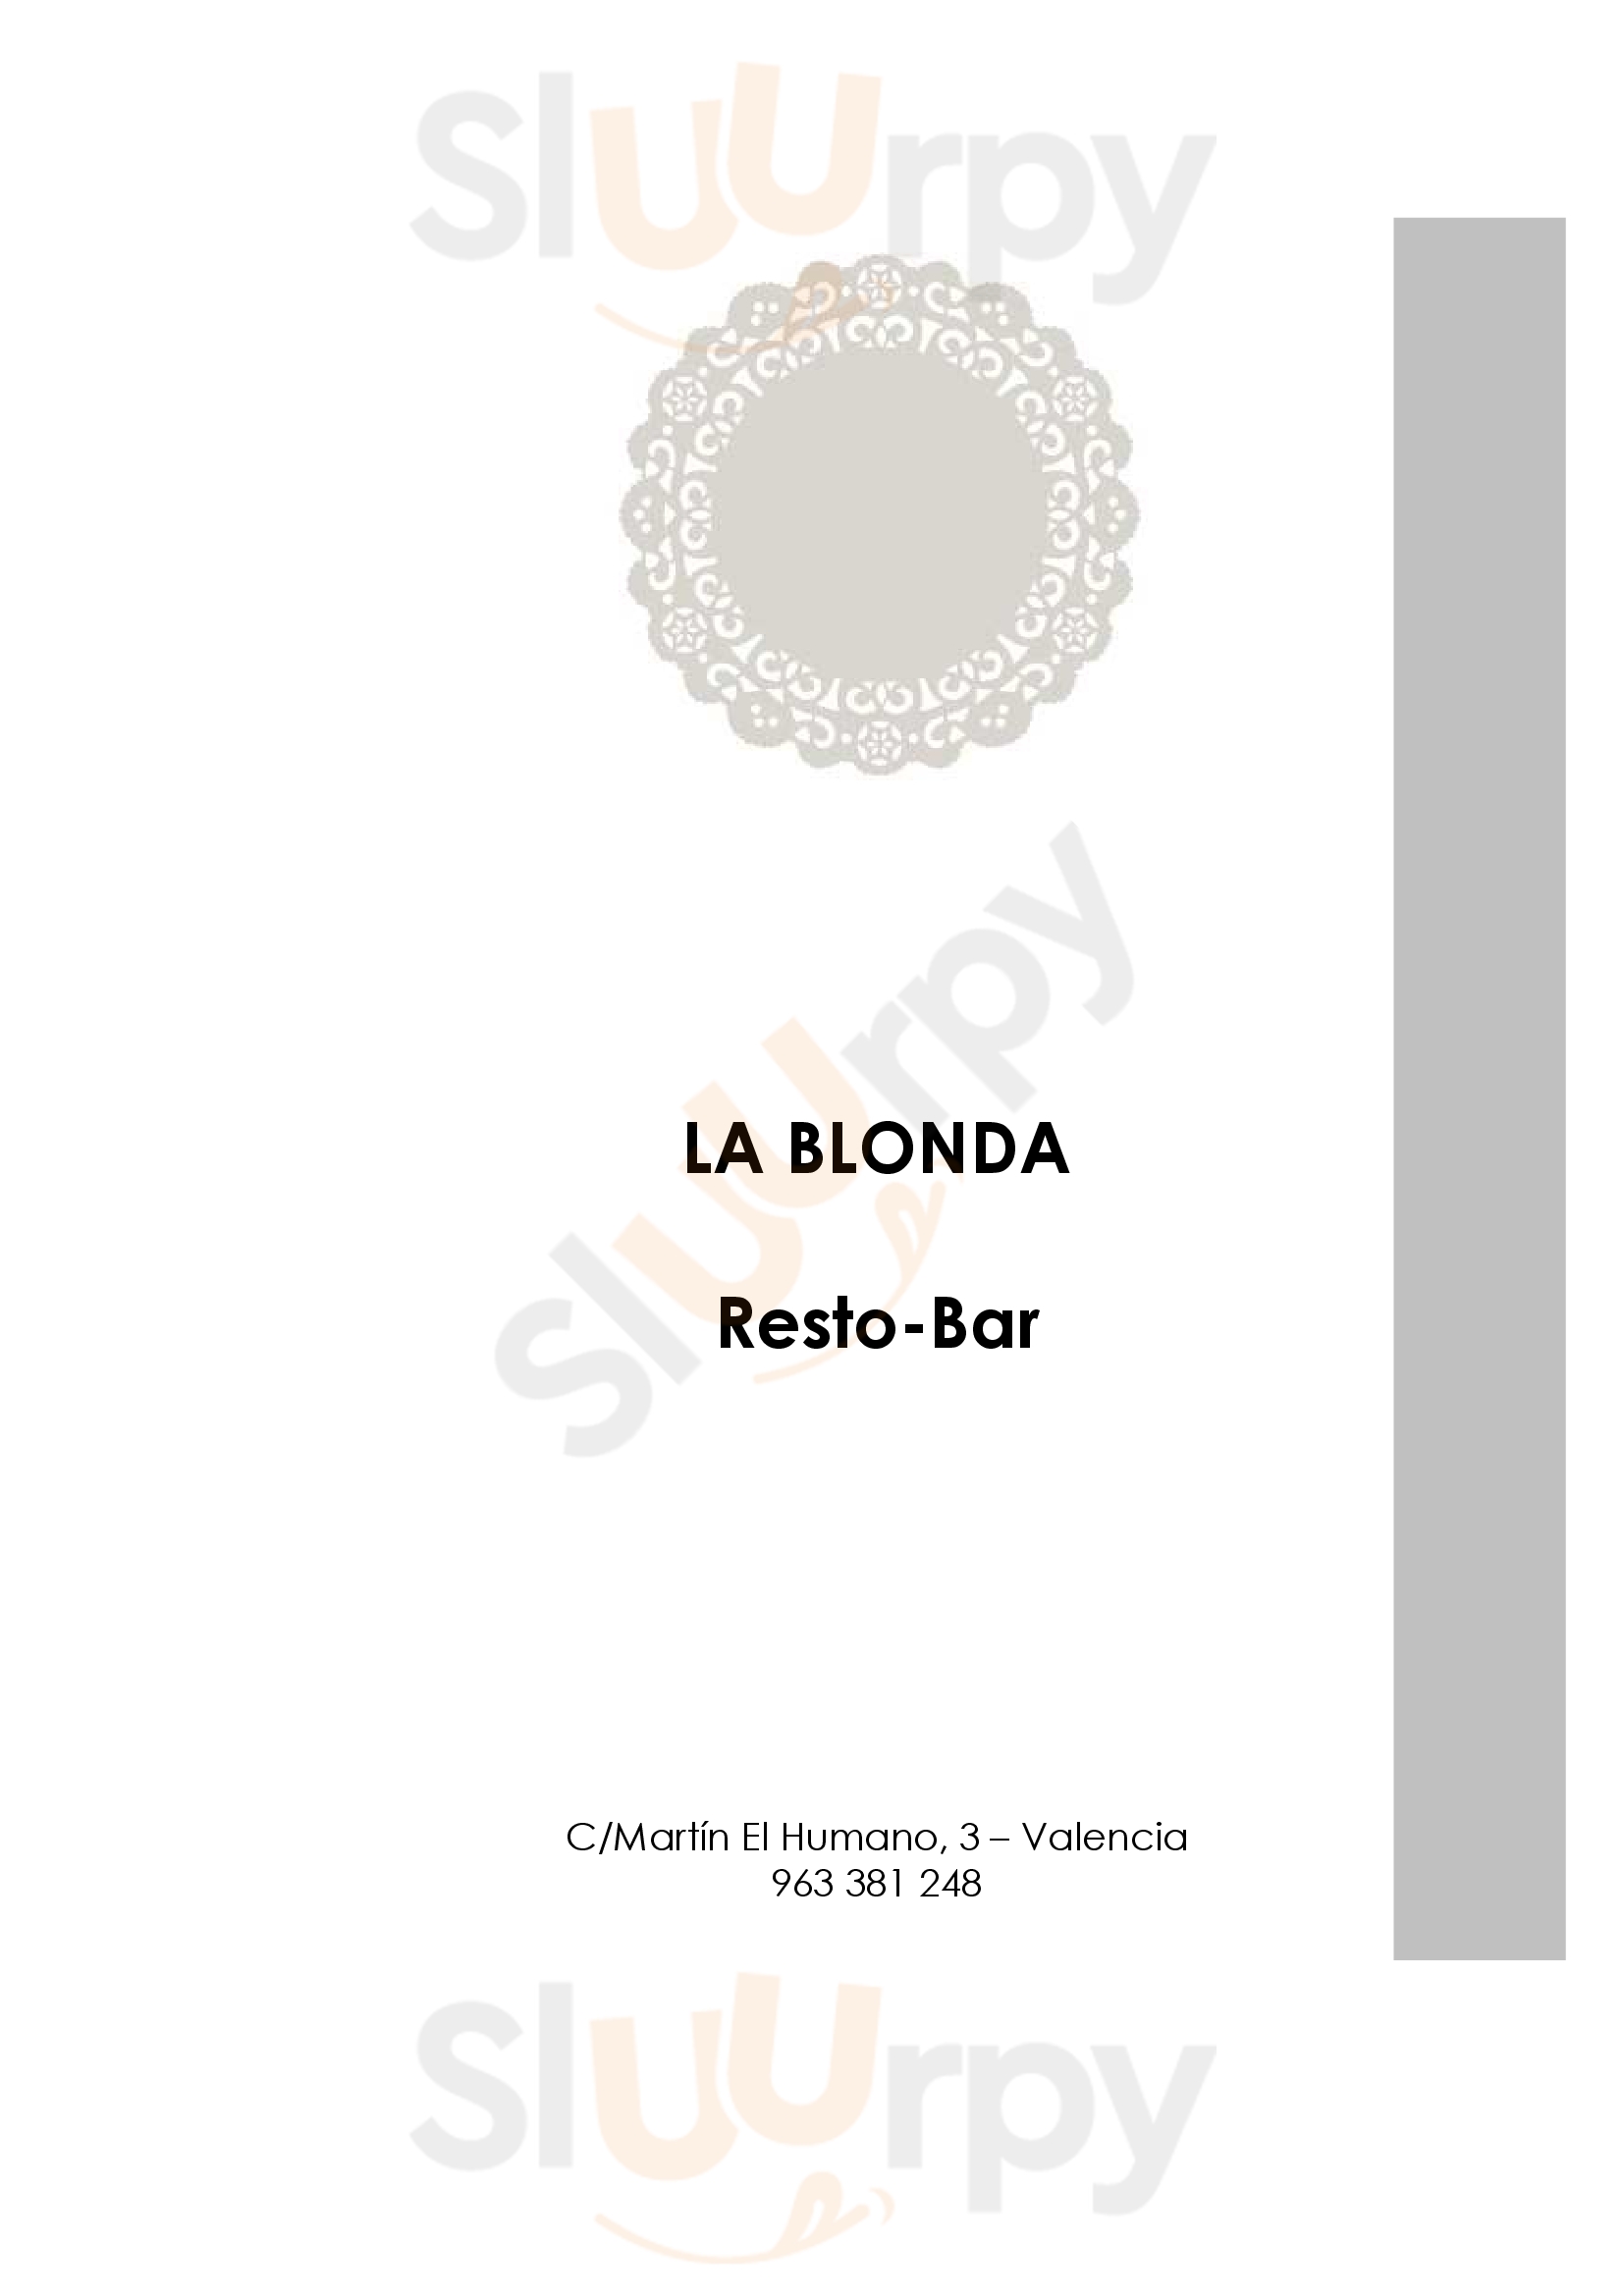 La Blonda Valencia Menu - 1